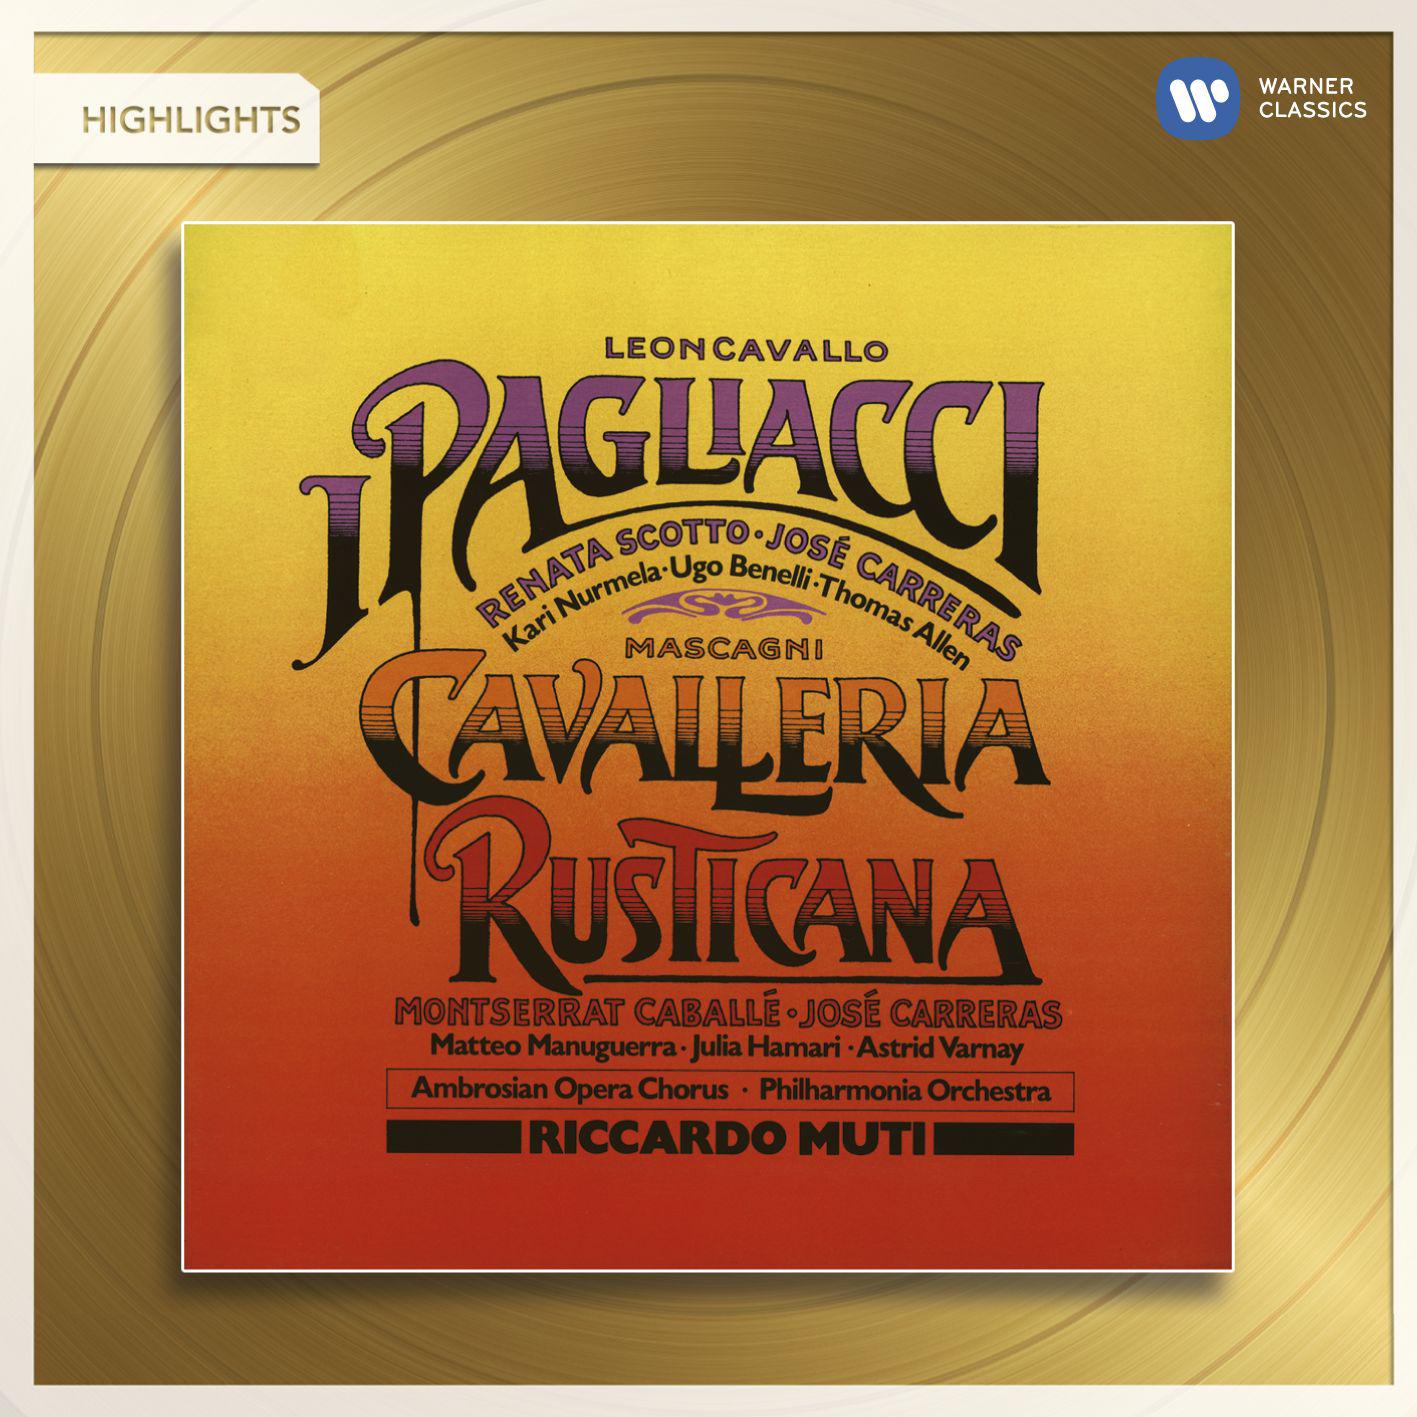 Cavalleria rusticana:No. 6, Romanza e Scena, "Voi lo sapete, o mamma" (Santuzza, Lucia)